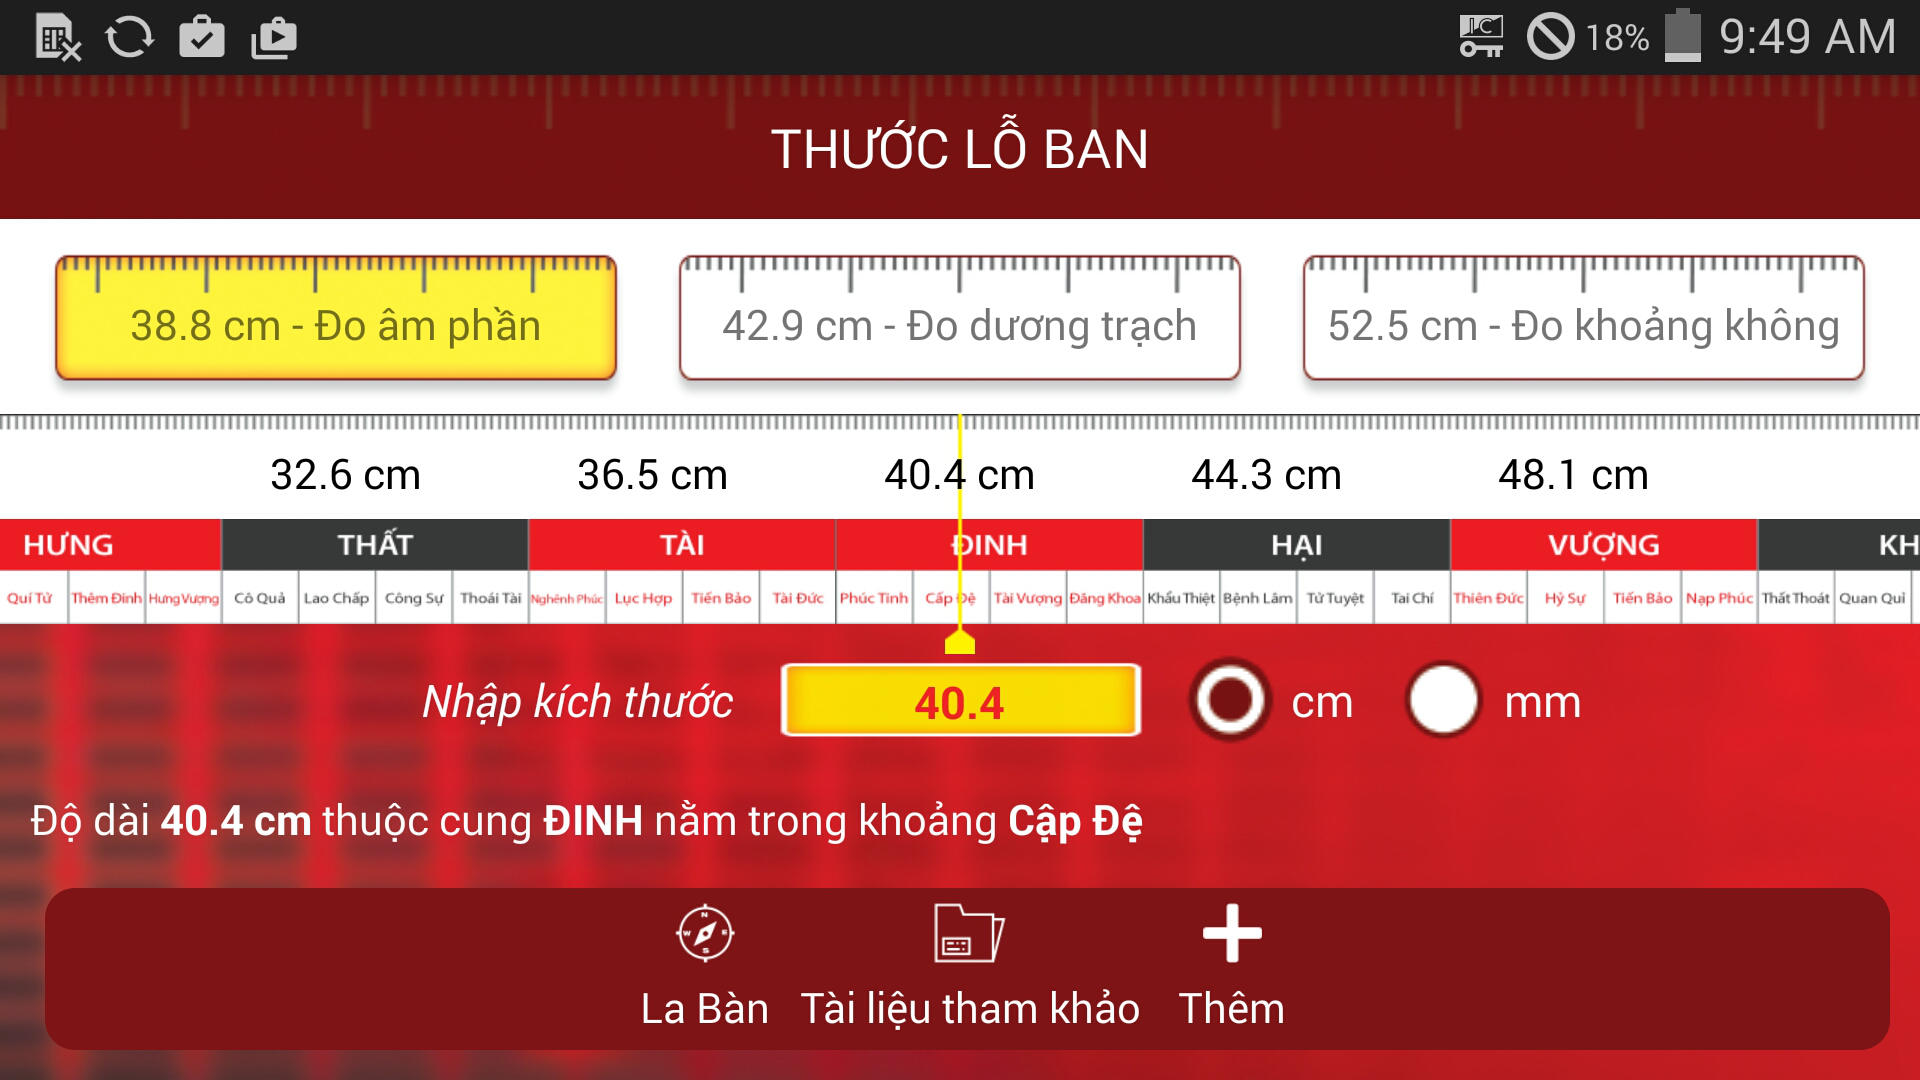 Android application Thuoc lo ban La ban Phong thuy screenshort